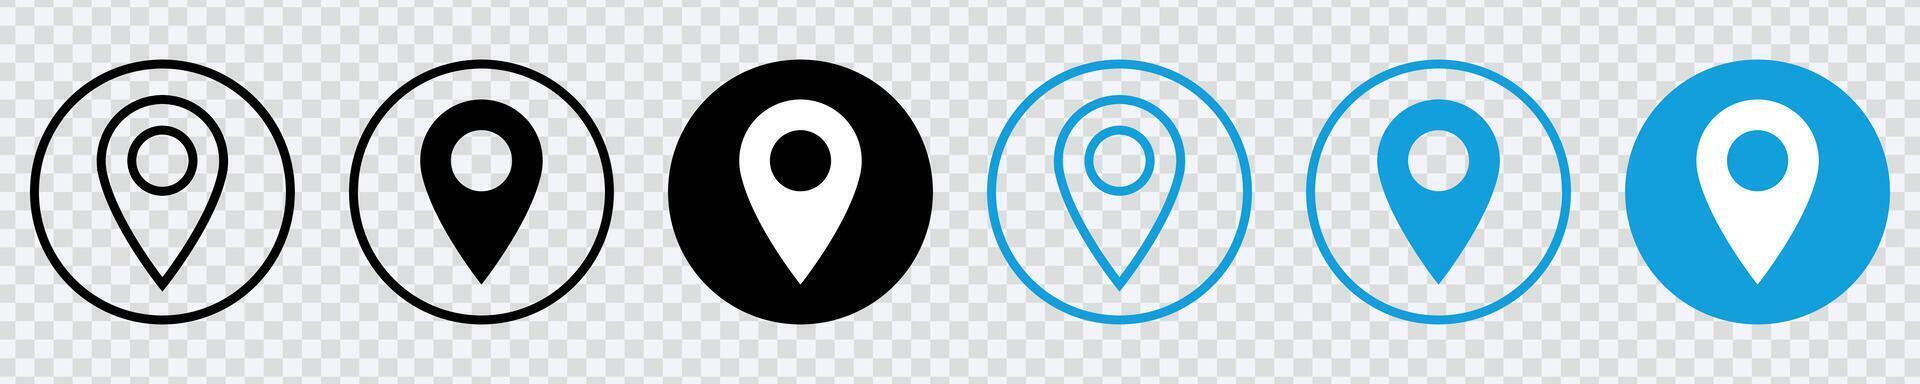 naviguer en toute transparence avec notre emplacement icône une polyvalent symbole pour Plans et précis emplacement indicateurs, parfait pour la toile et app dessins vecteur